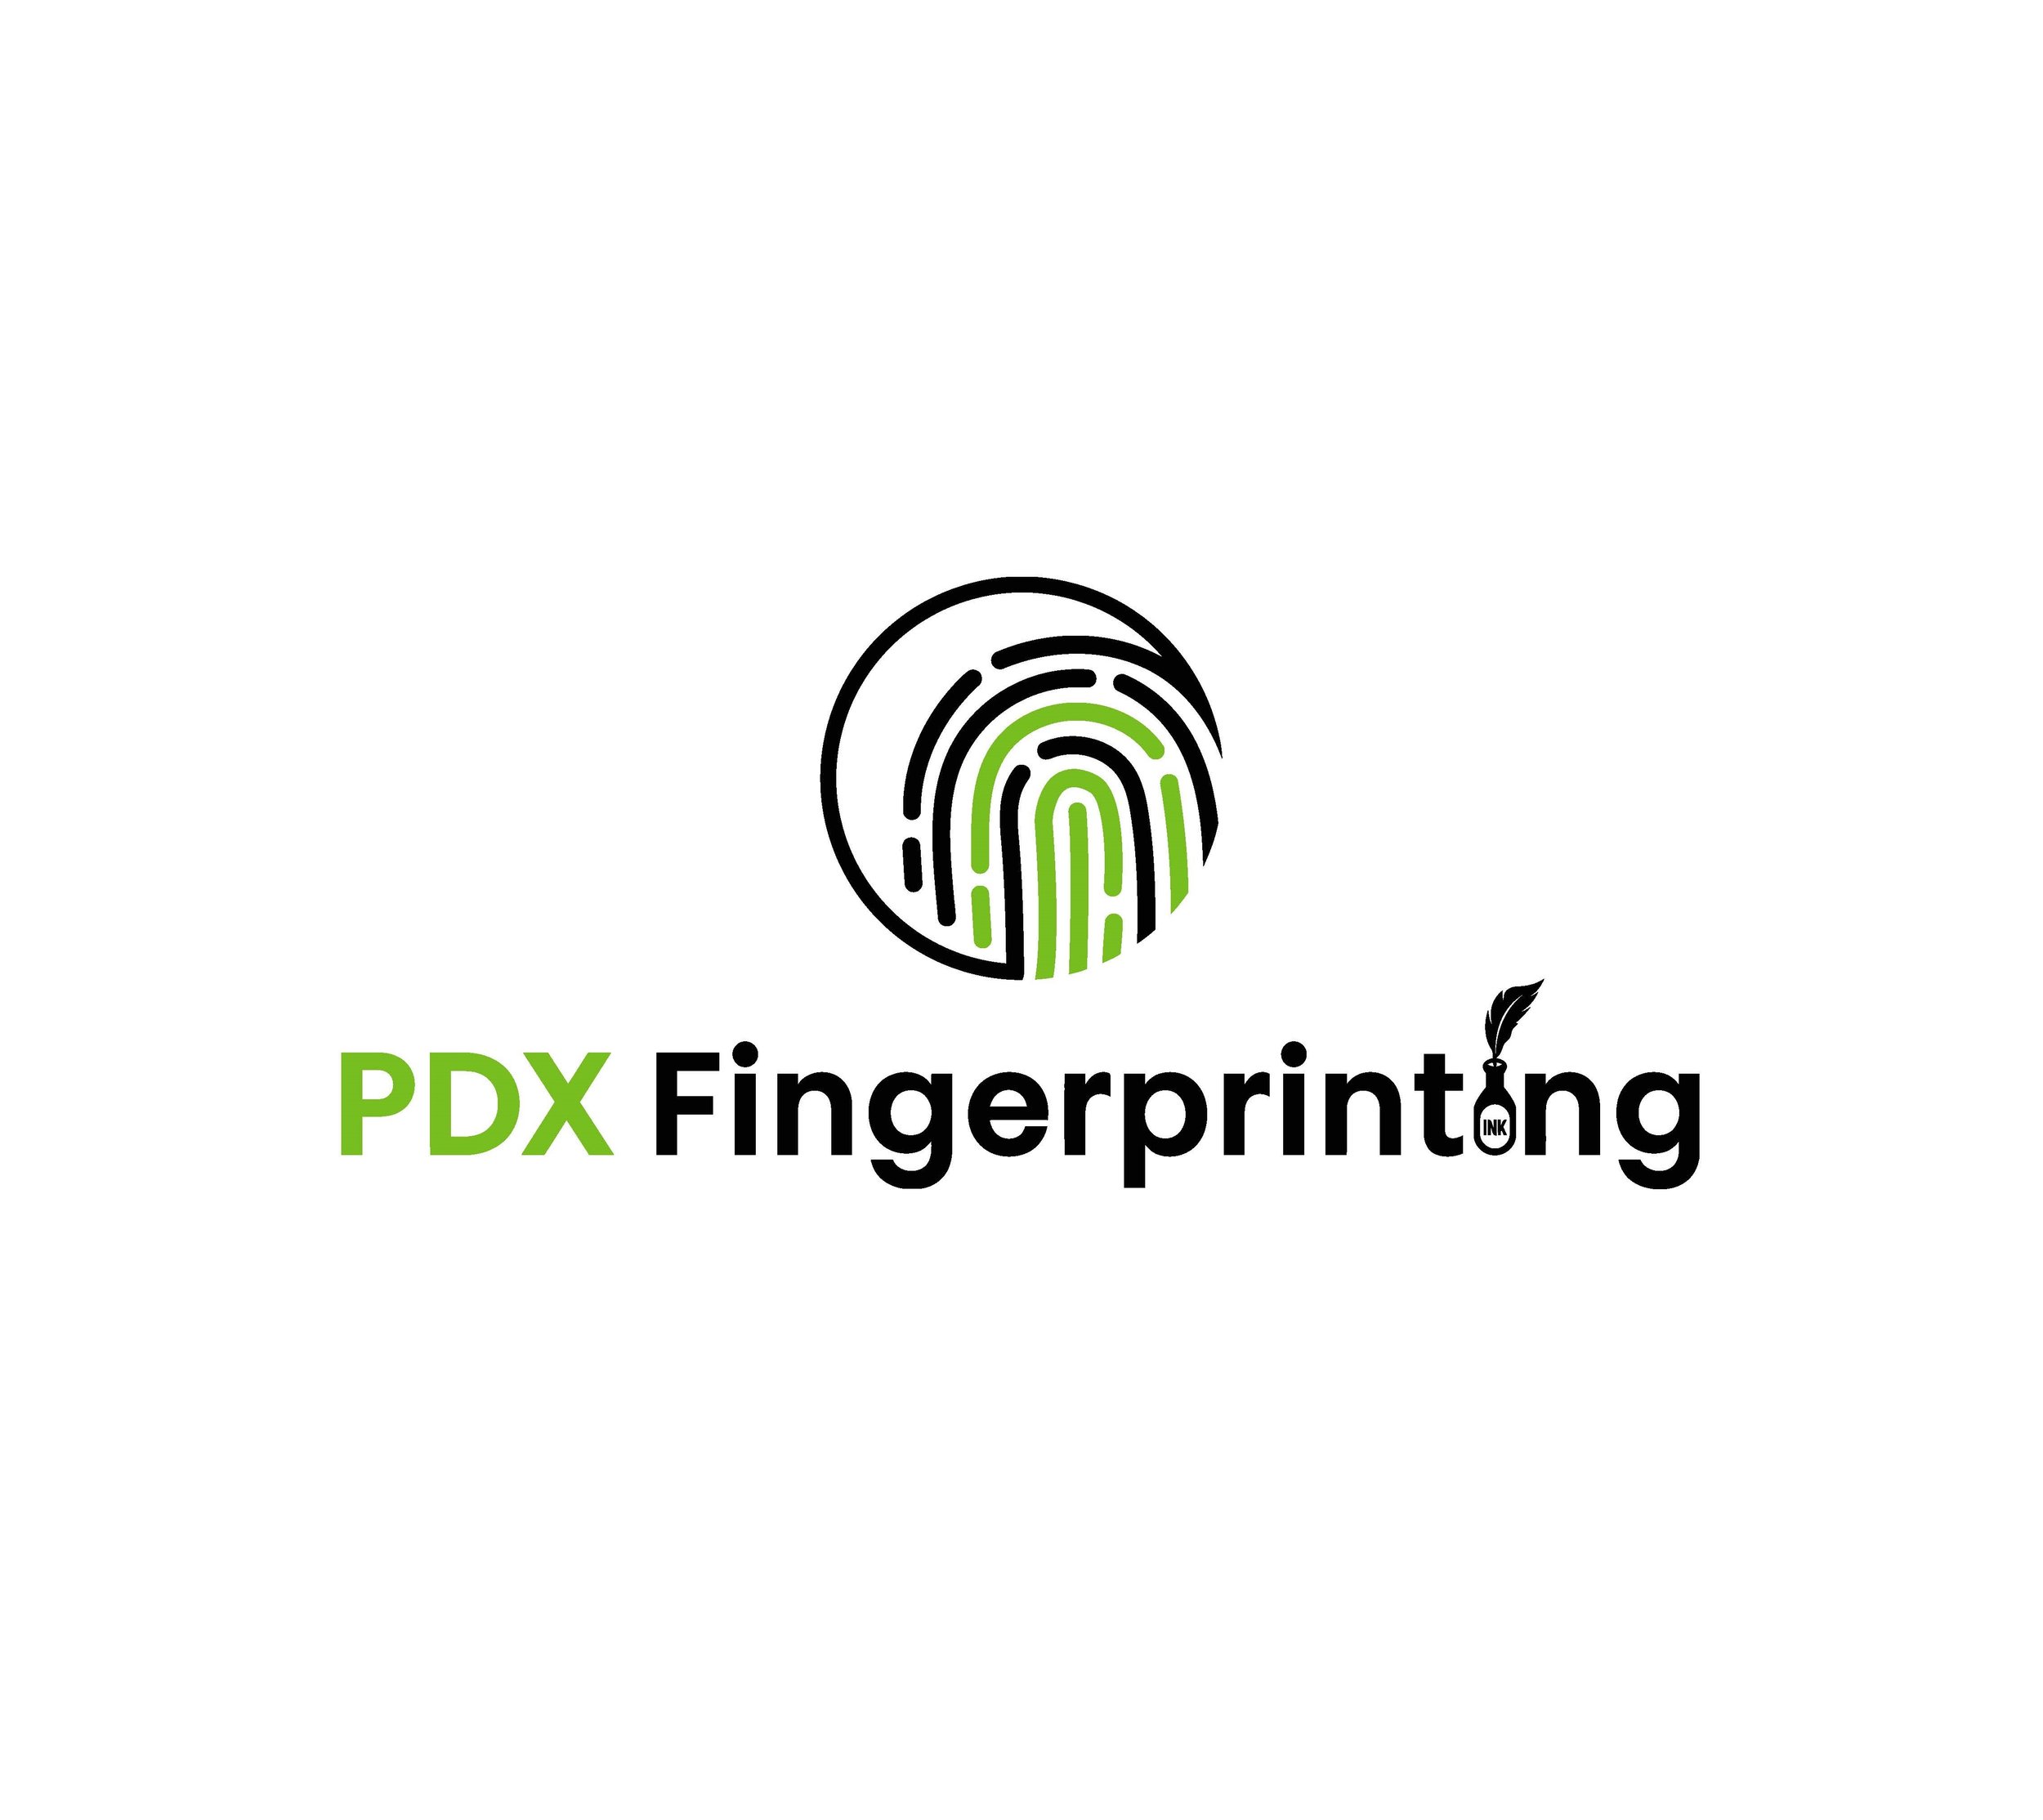 PDX Fingerprint logo.jpg